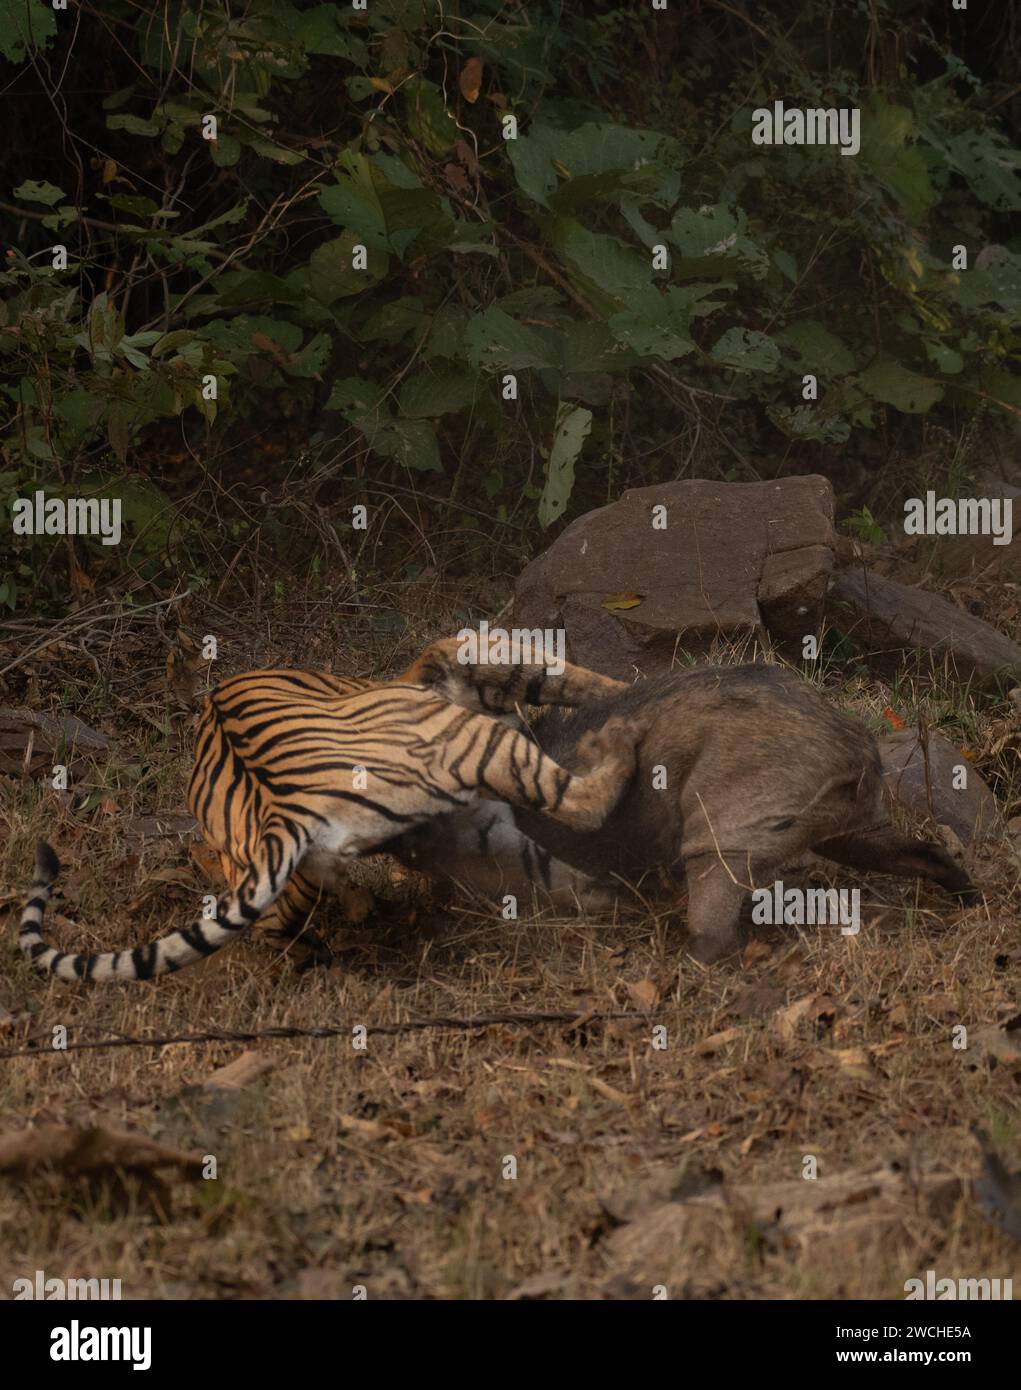 Beide stürzen in INDIEN actiongeladene Bilder zeigen eine Tigerin, die am 7. Januar in Maharashtra, Indien, ein Wildschwein angreift. Die Tigerin hatte hidd Stockfoto